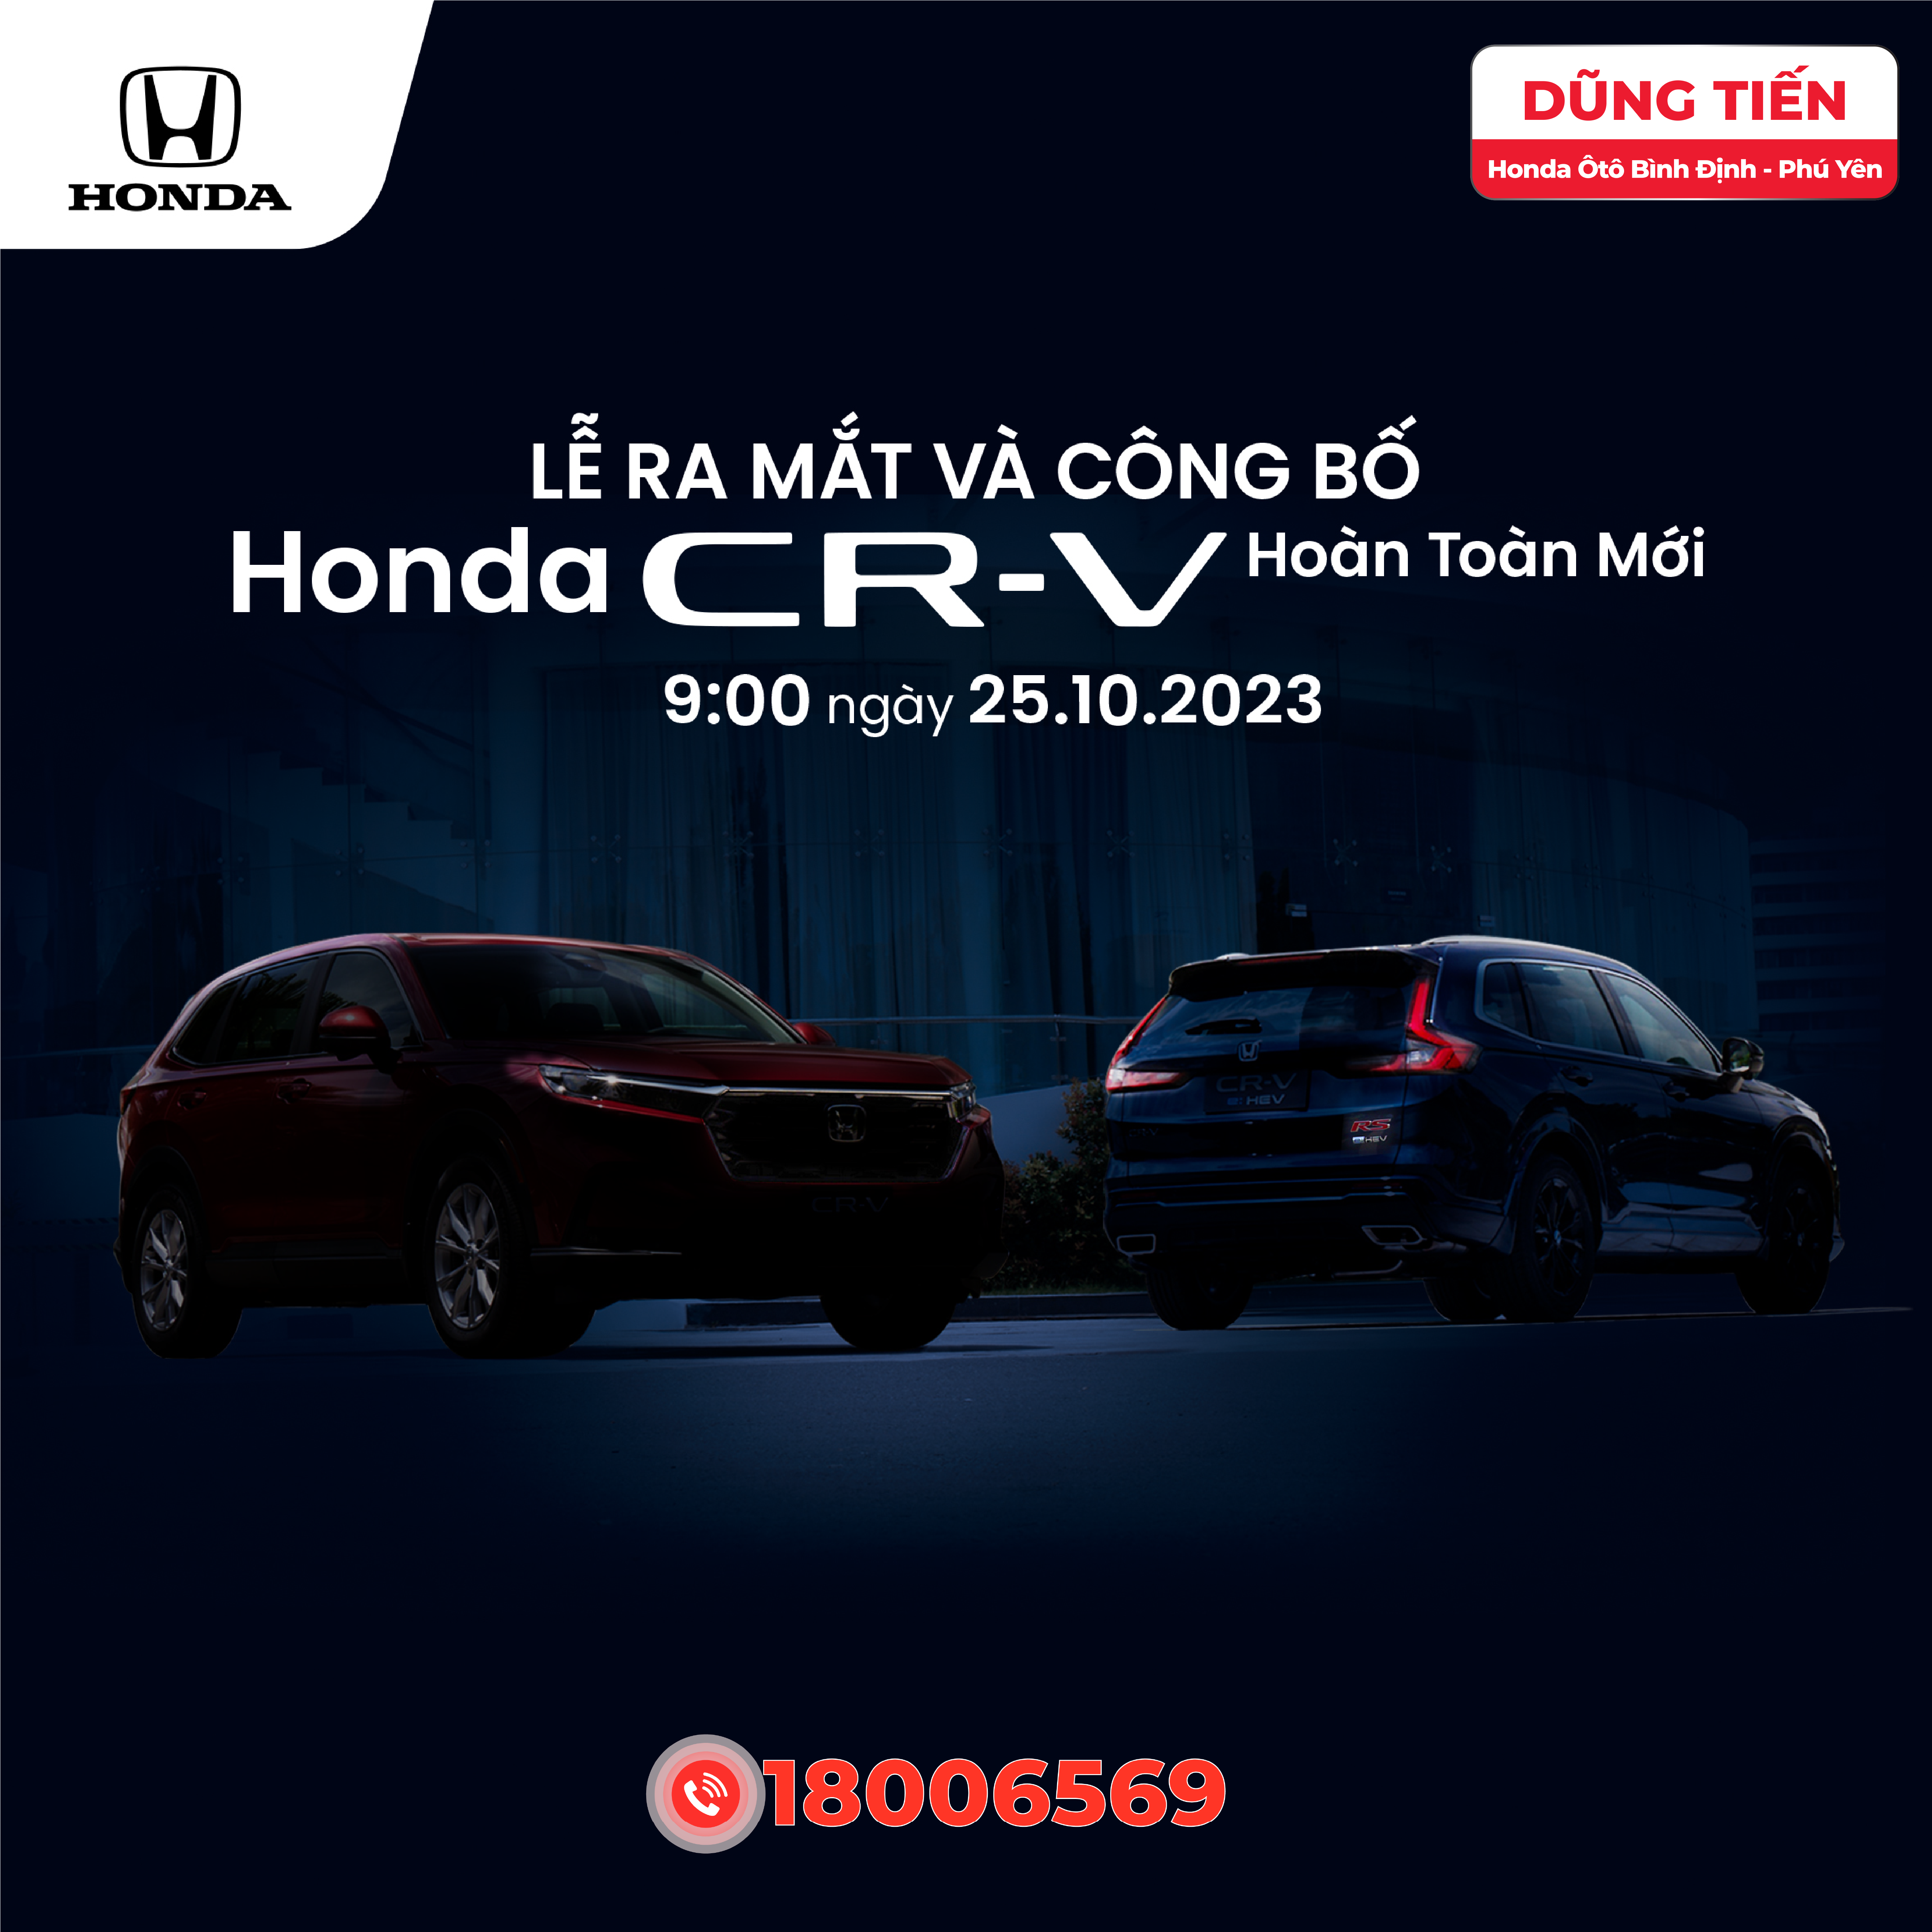 Dũng Tiến - Honda Ôtô Bình Định - Phú Yên ra mắt Honda CR-V Hoàn Toàn Mới